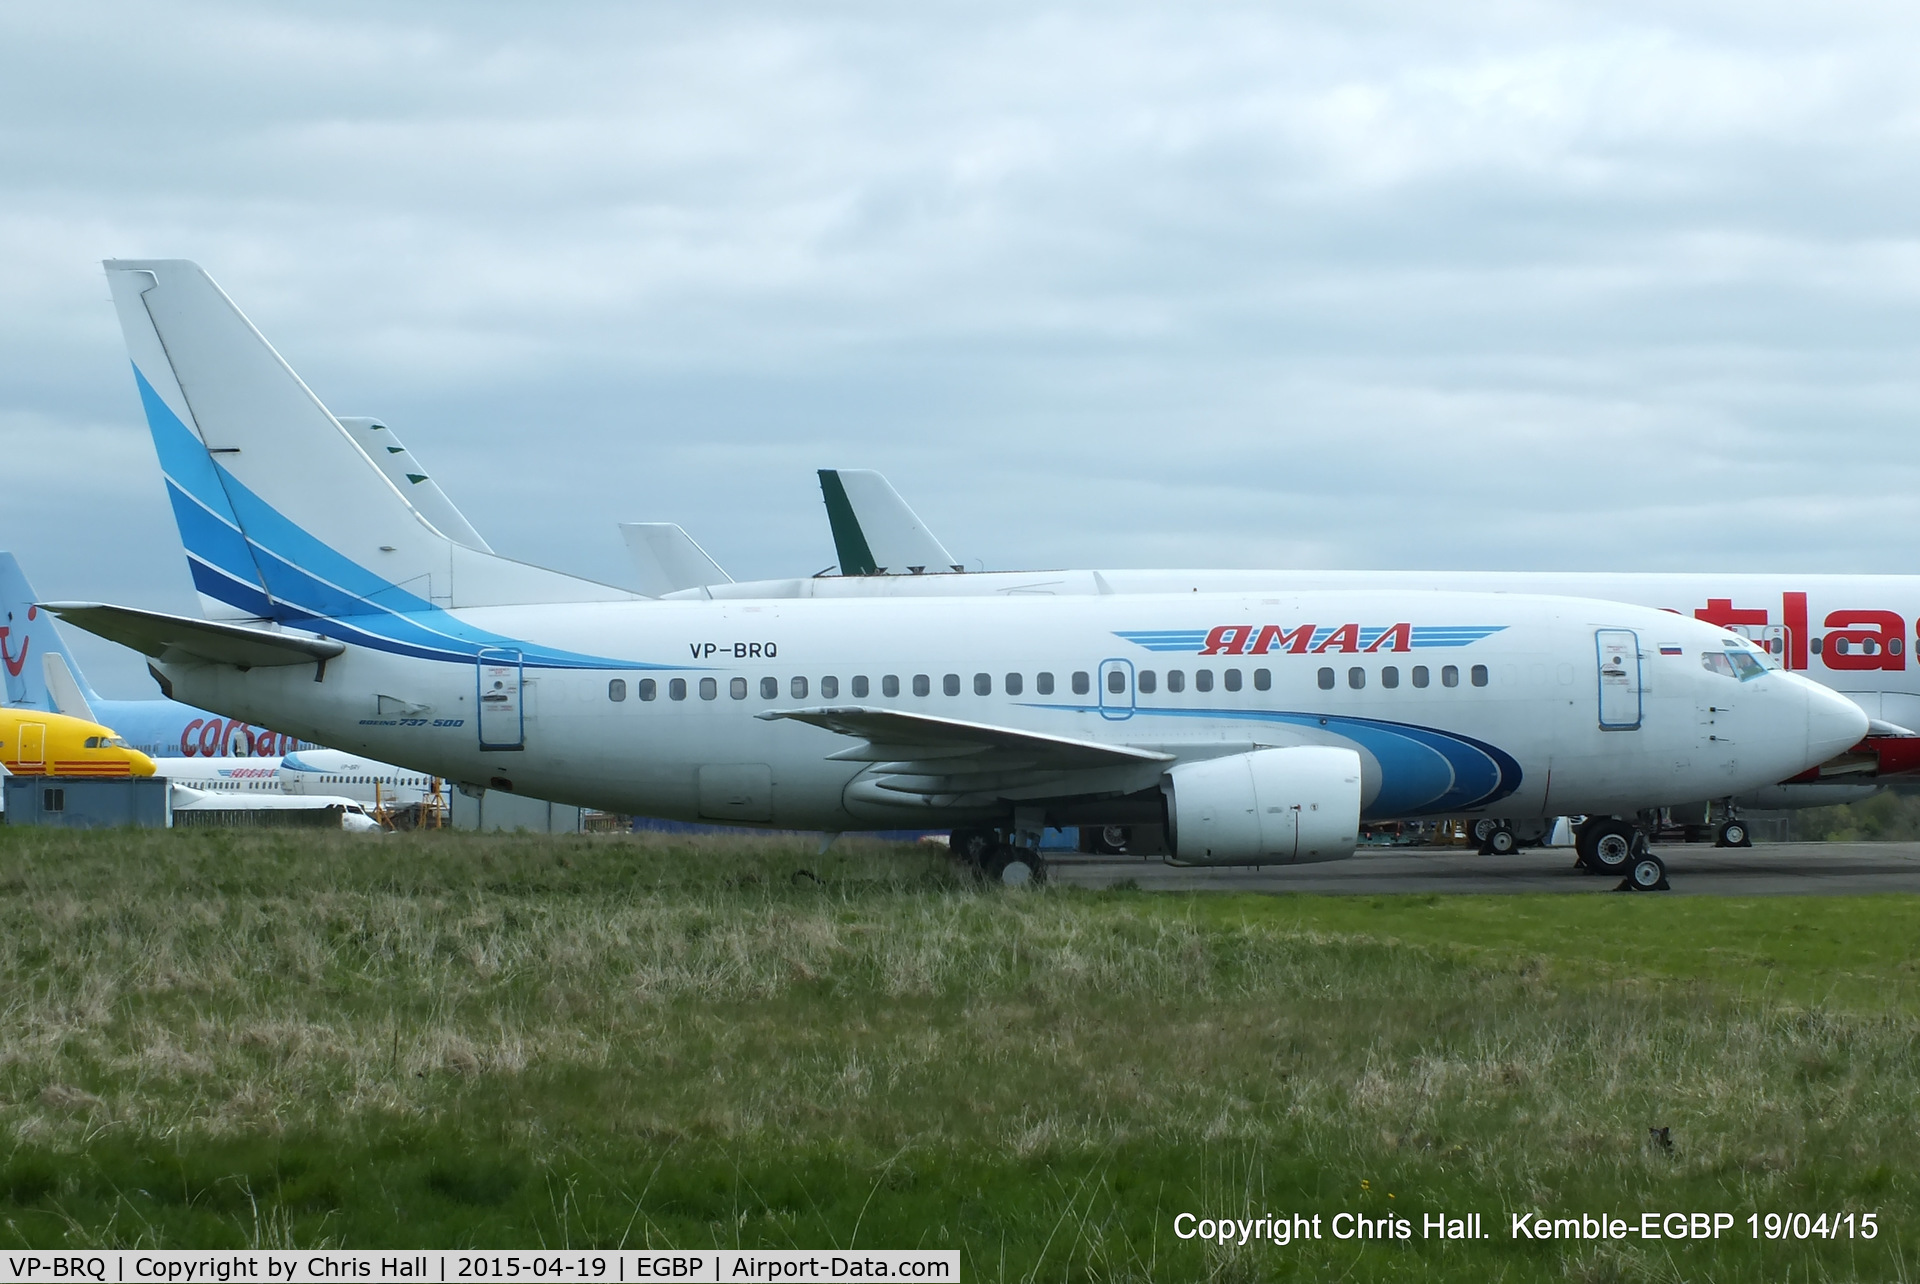 VP-BRQ, 1991 Boeing 737-528 C/N 25230, ex Yamal Airlines, in storage at Kemble